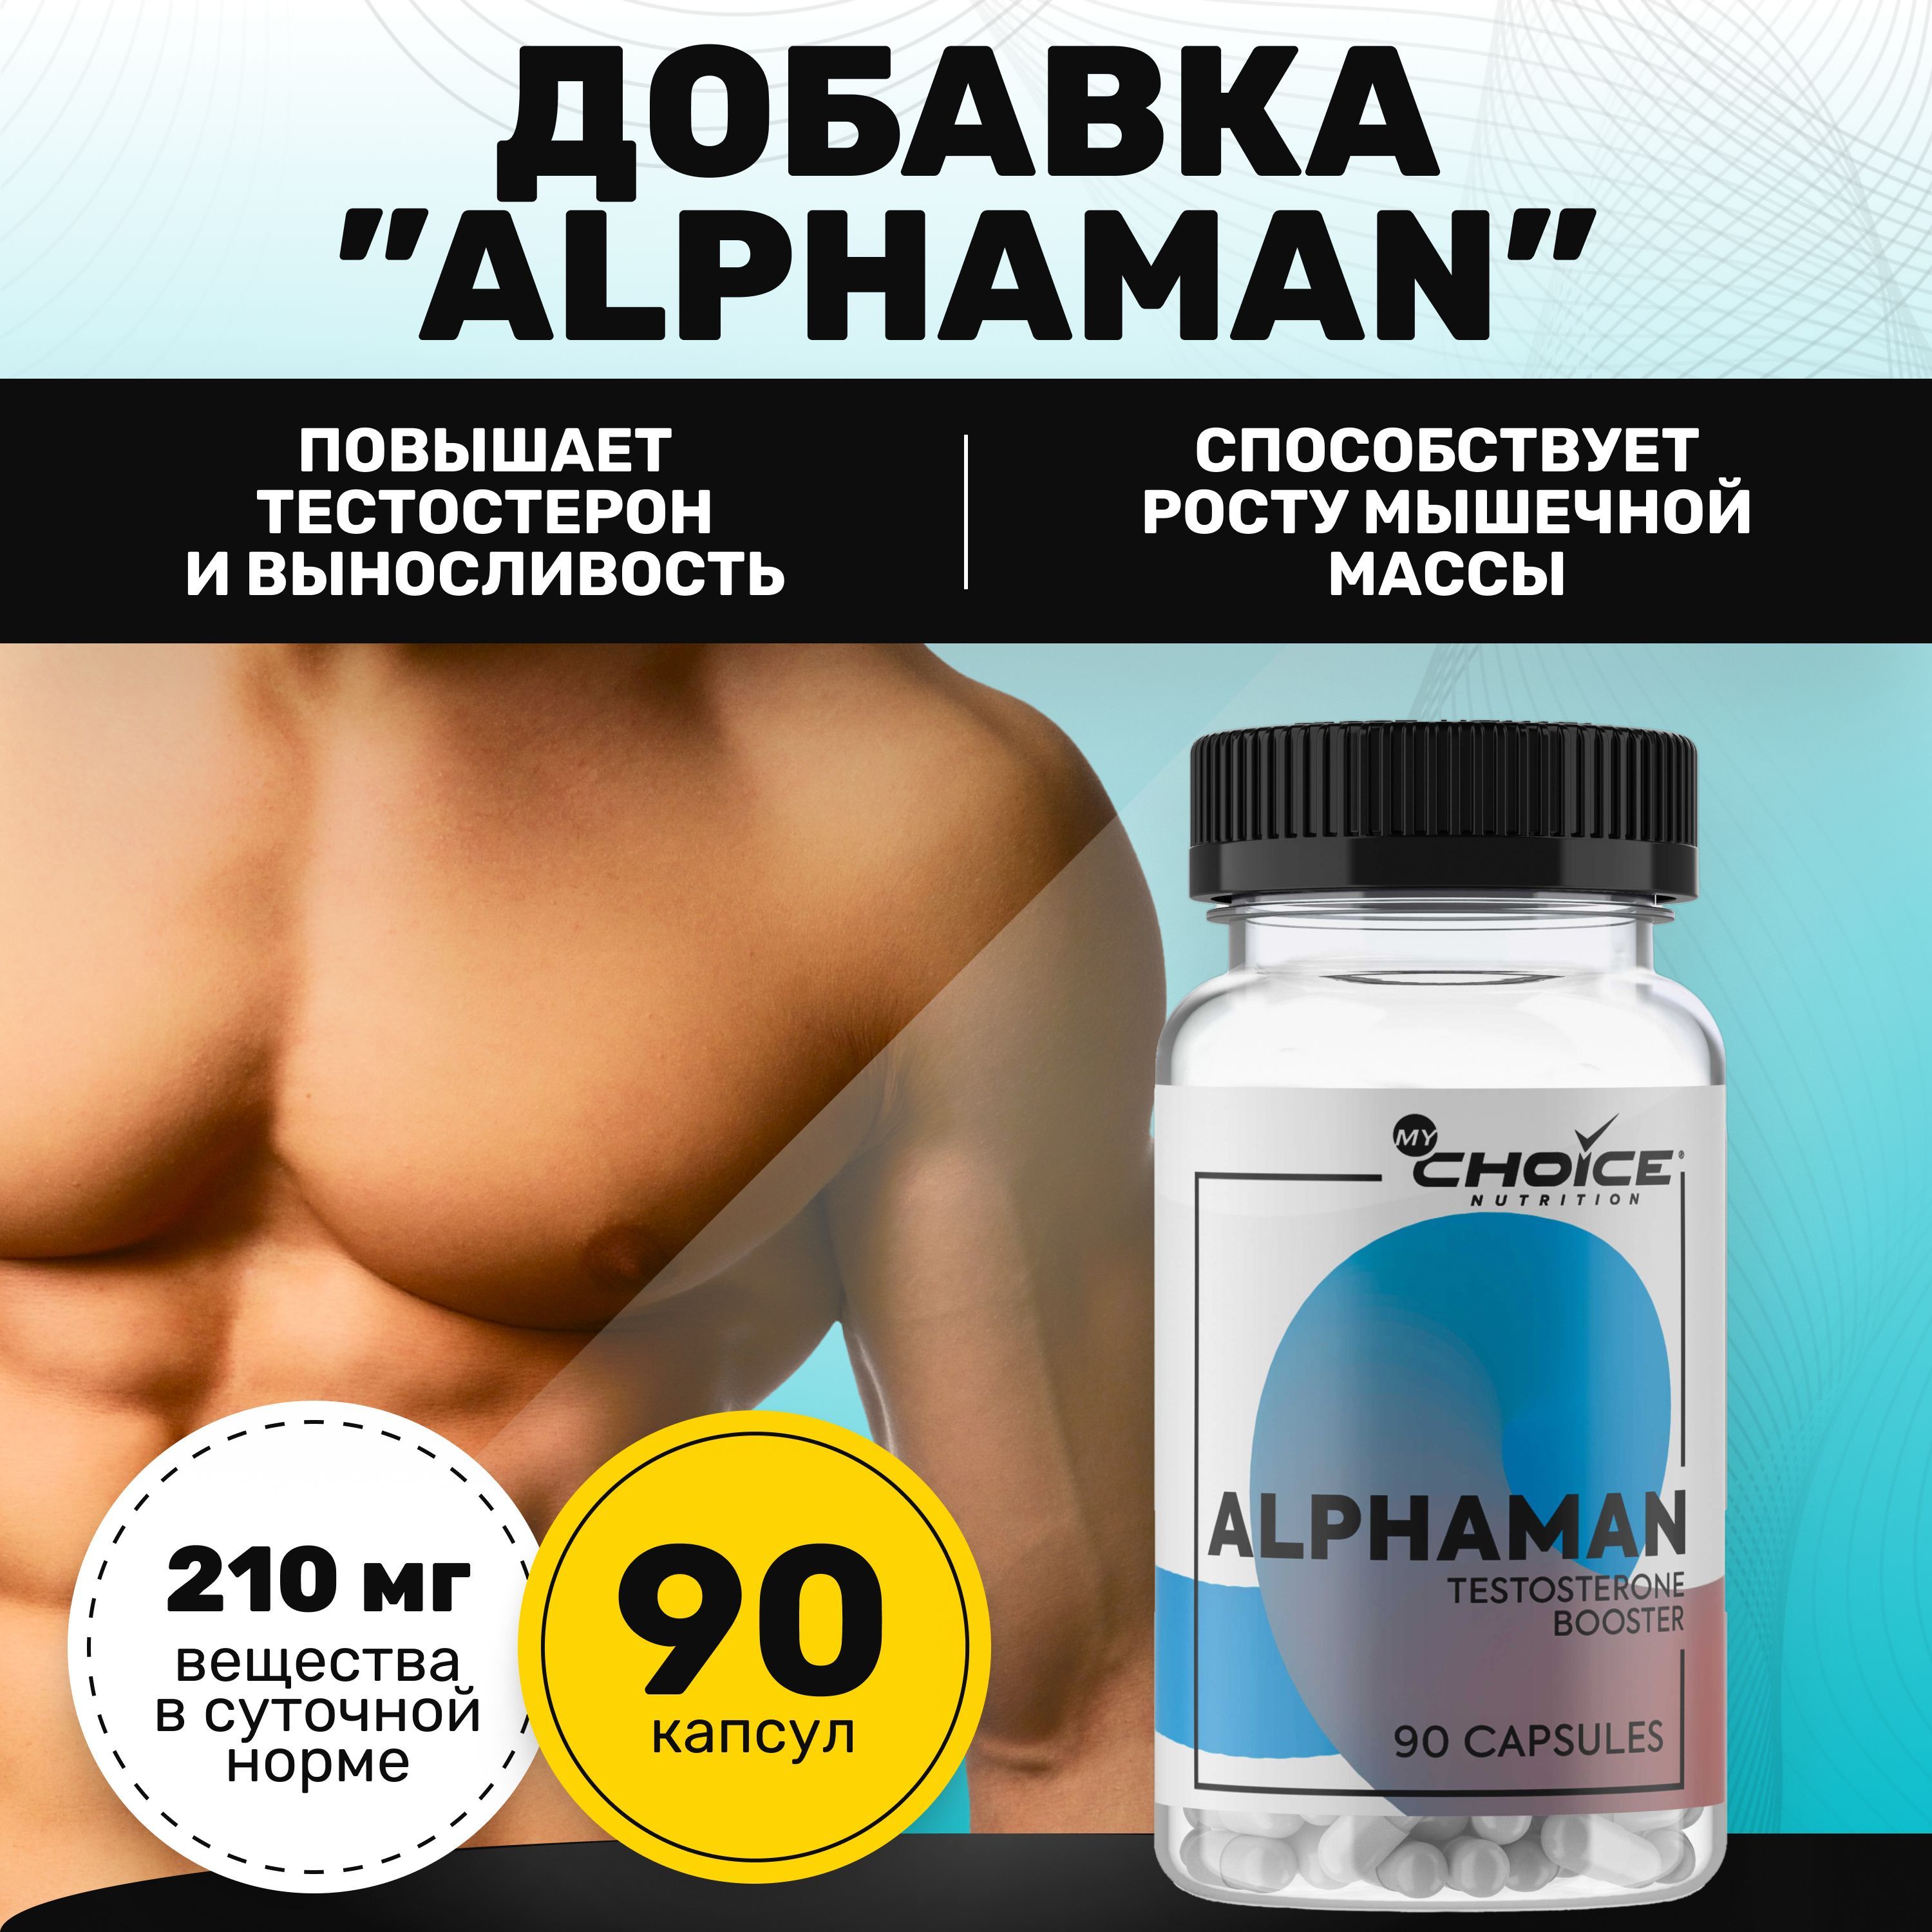 Биологически активная добавка Alphaman MyChoice Nutrition, 90 капсул